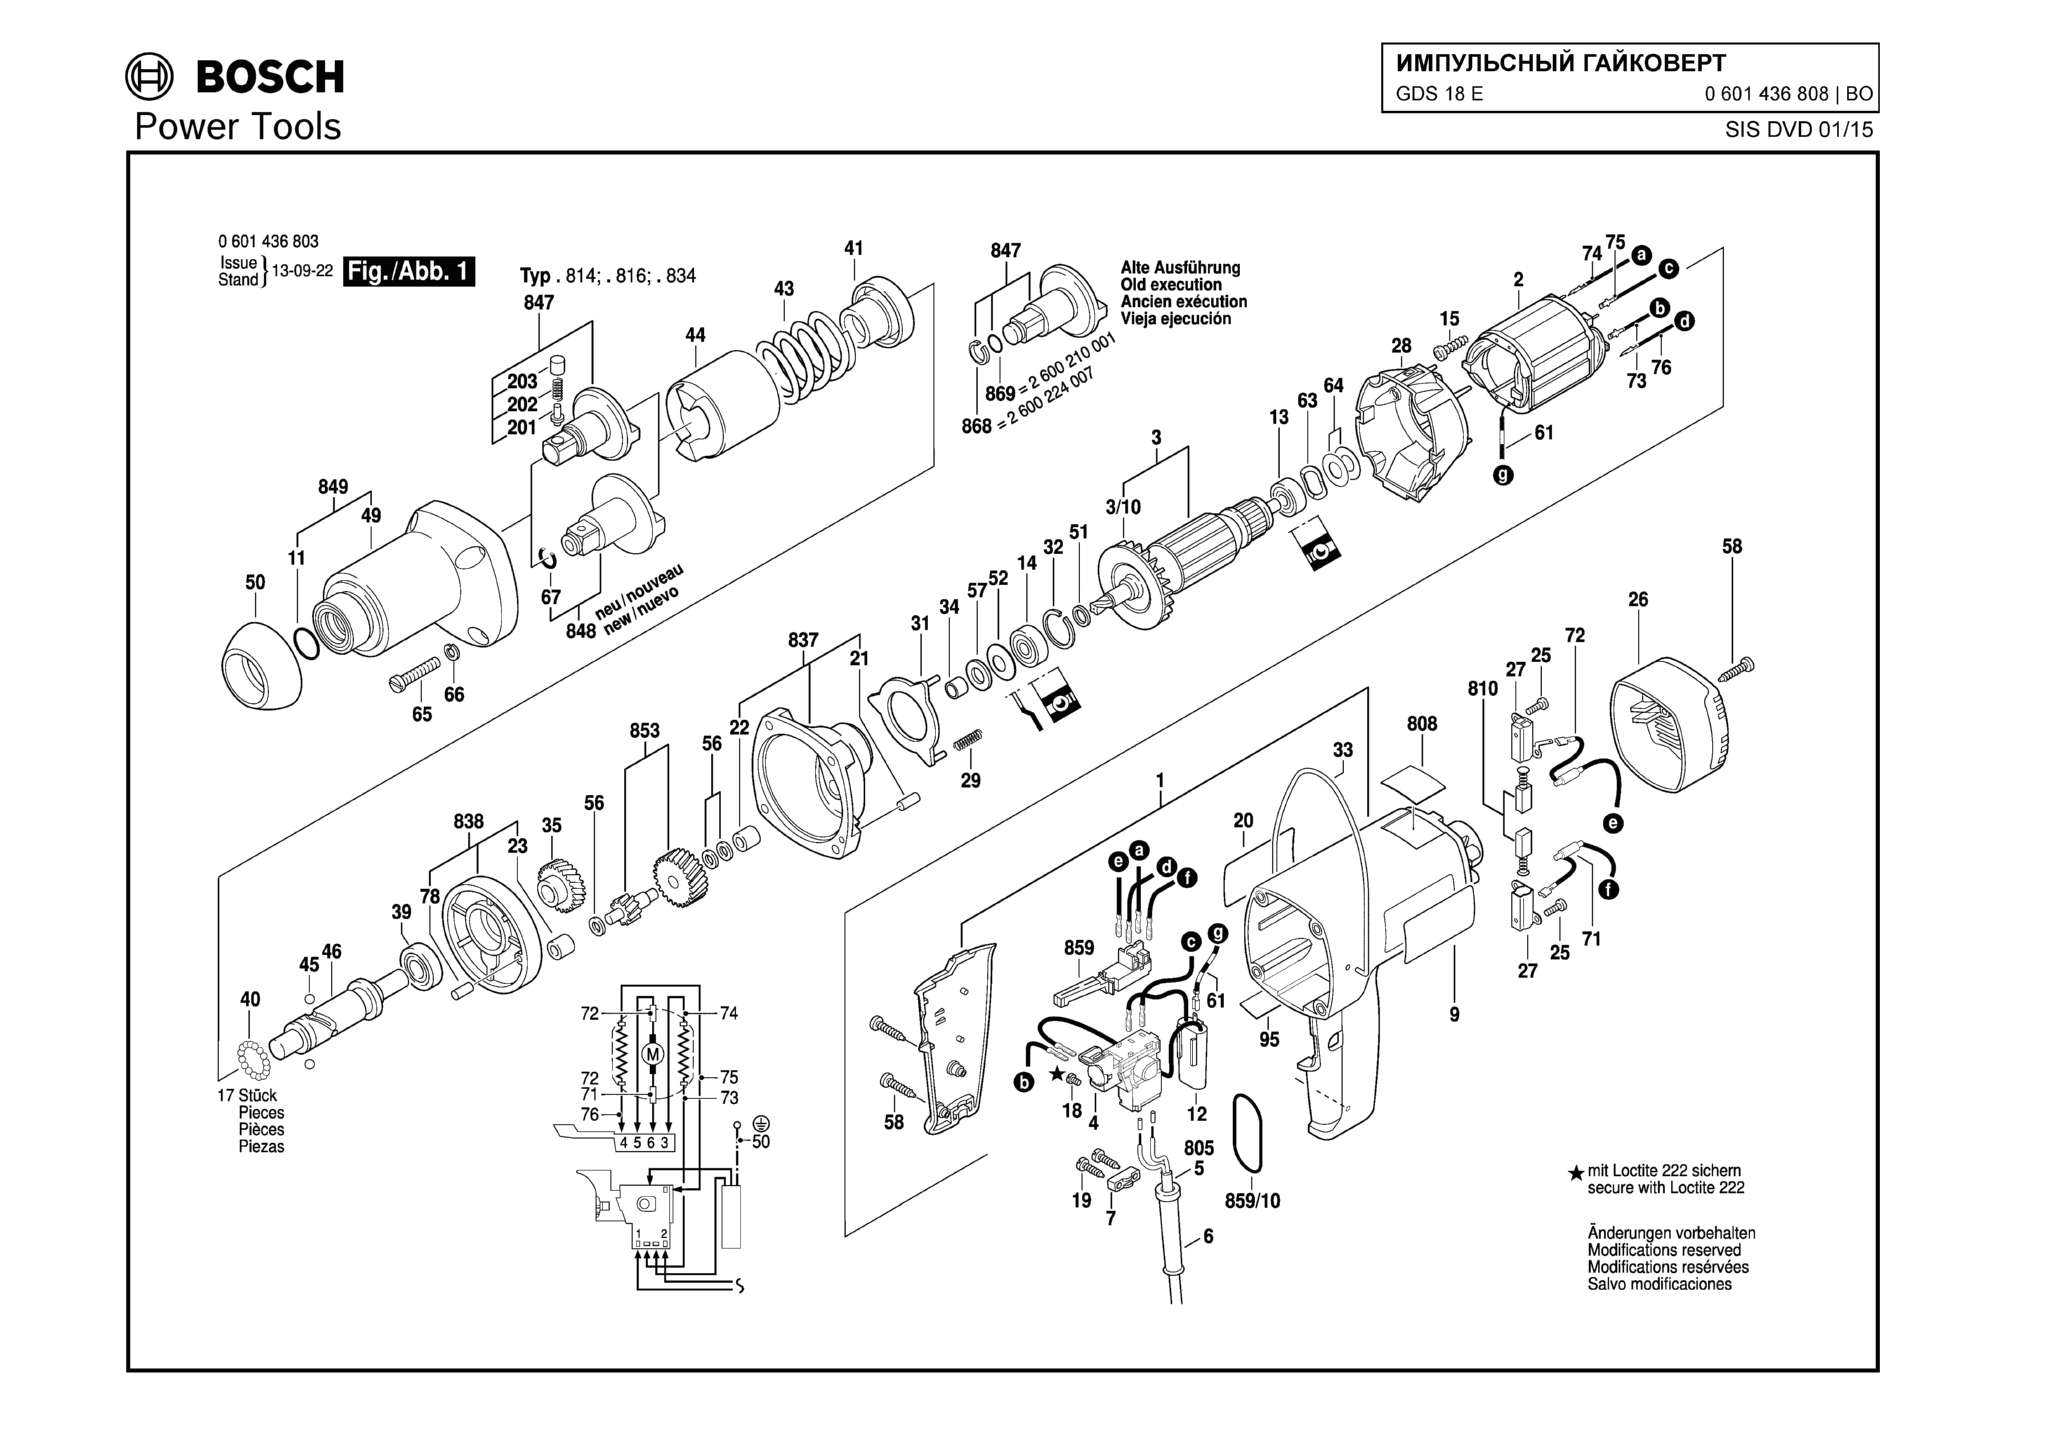 Запчасти, схема и деталировка Bosch GDS 18 E (ТИП 0601436808)